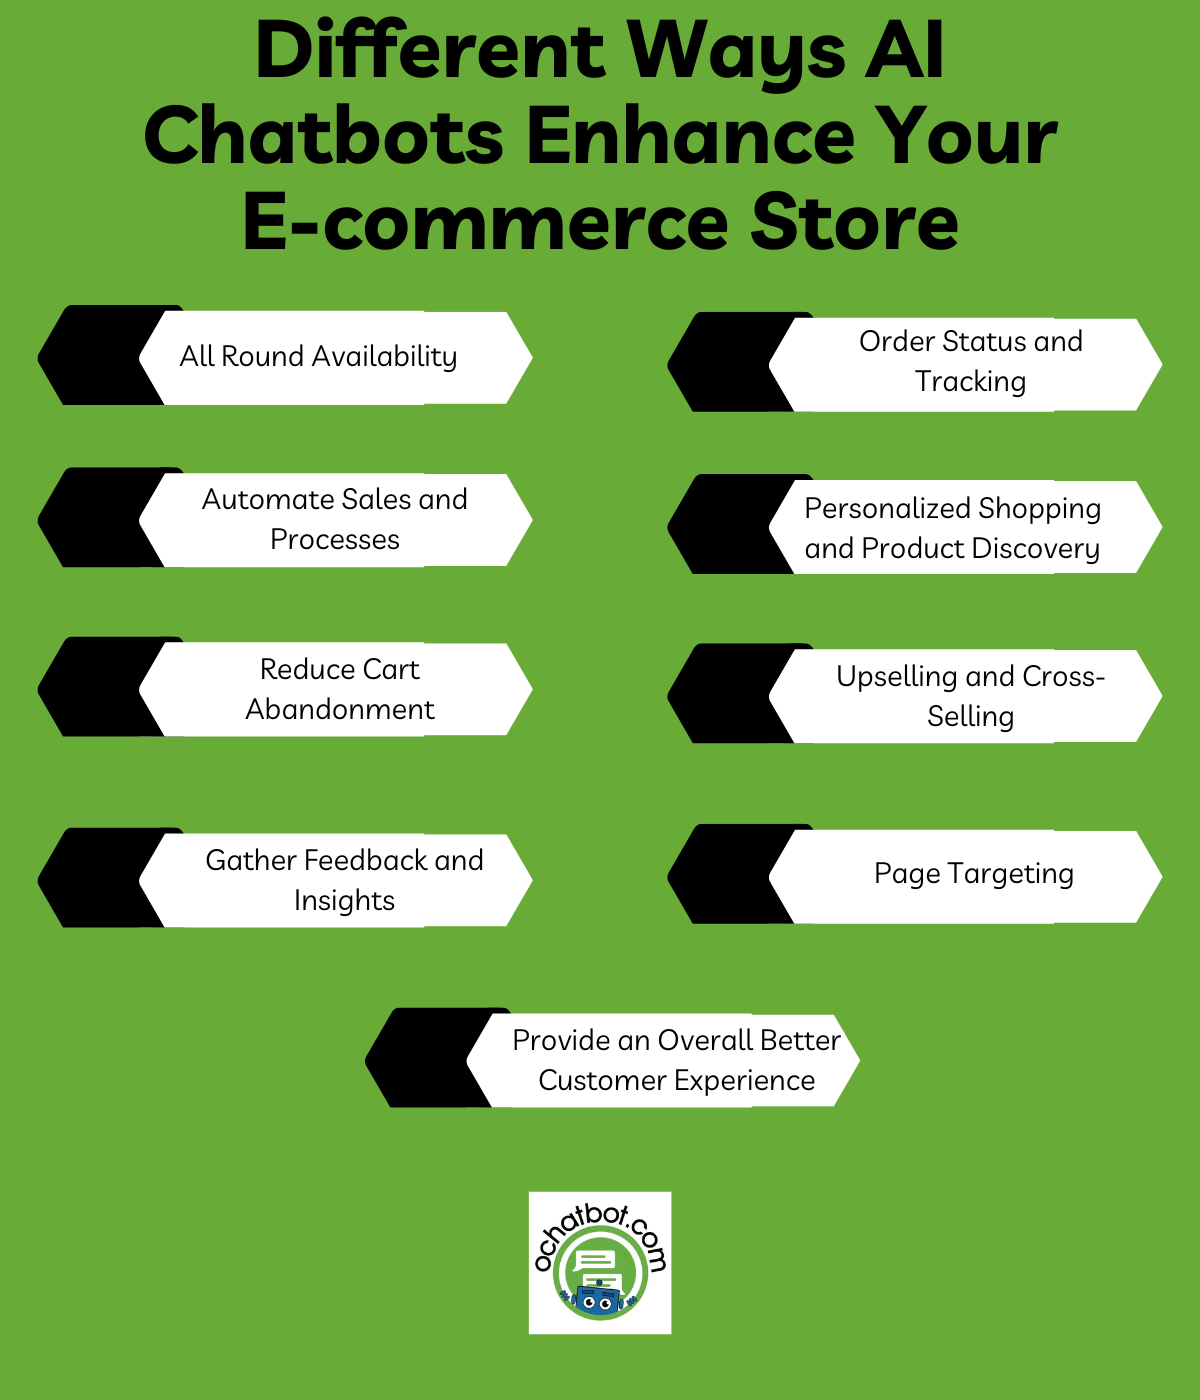 Different Ways AI Chatbots Enhance Your E-commerce Store